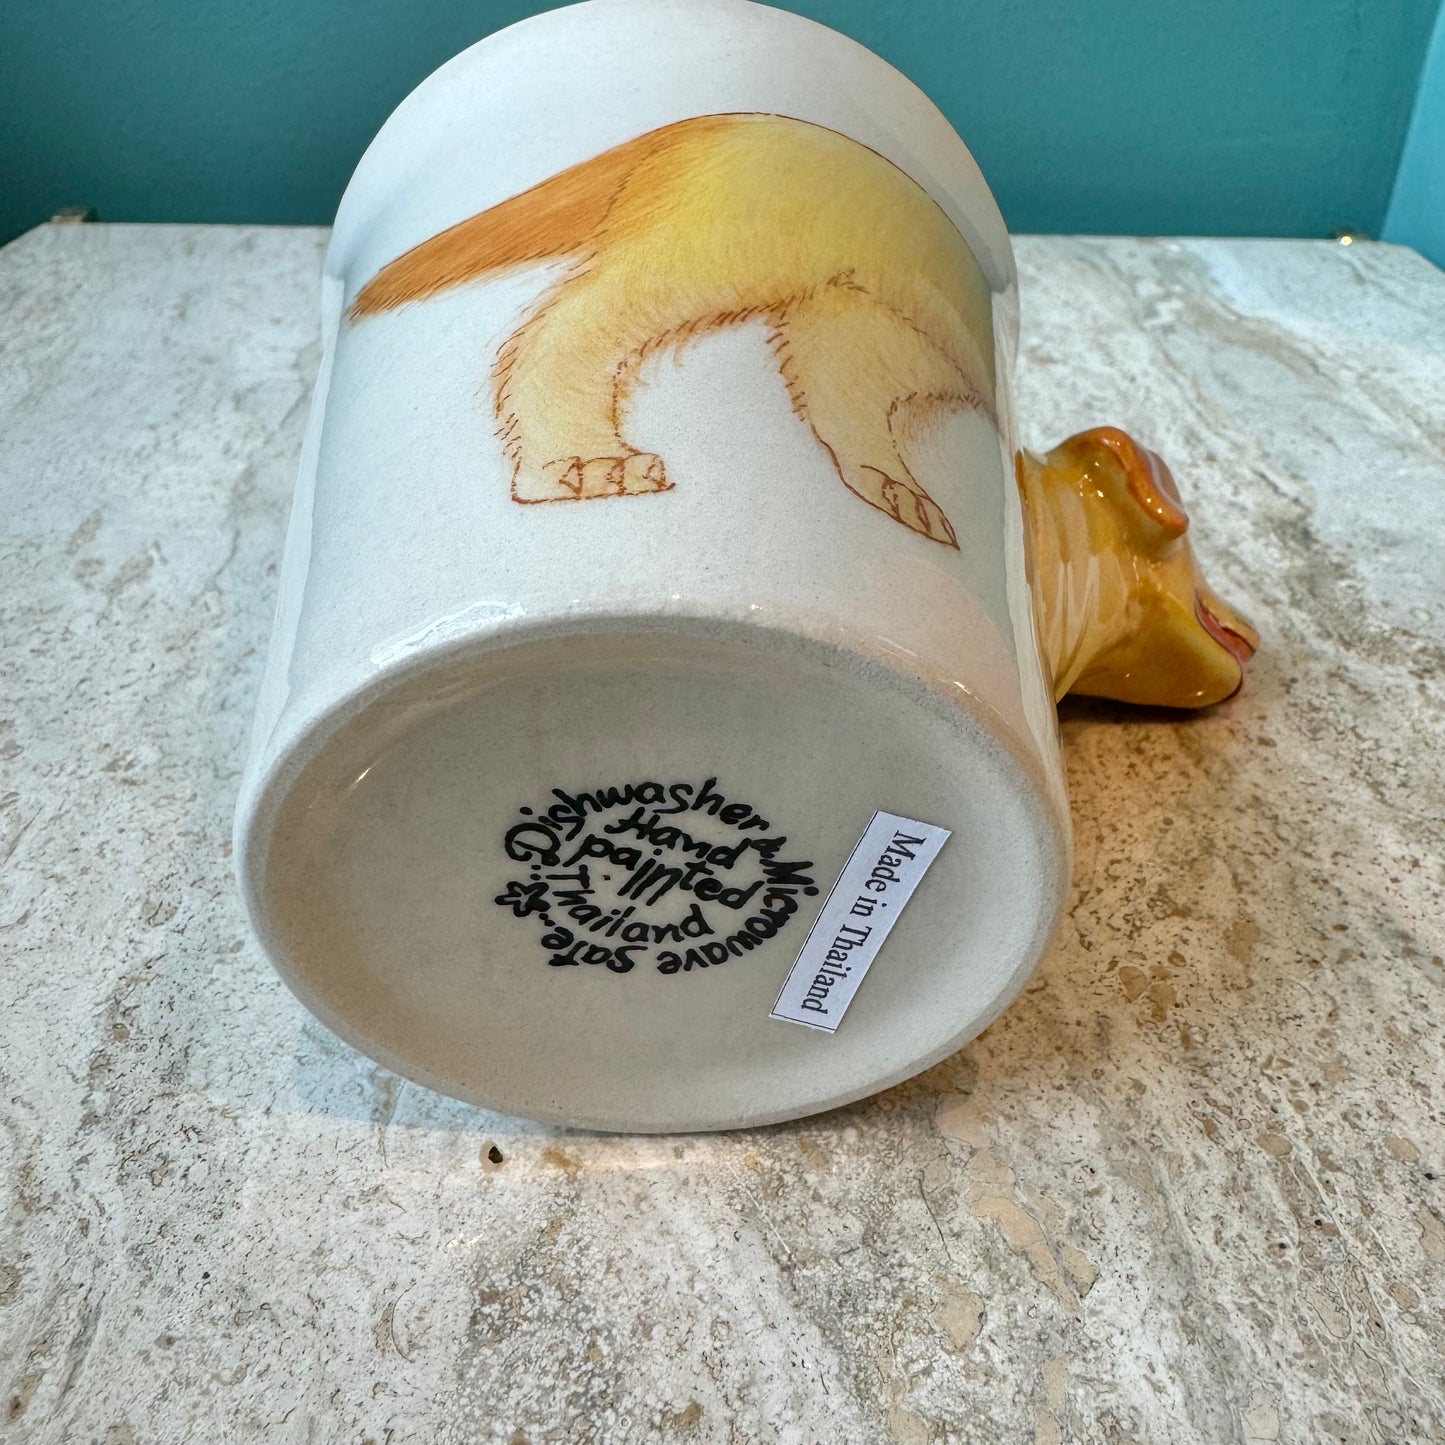 Yellow Labrador Retriever Mug